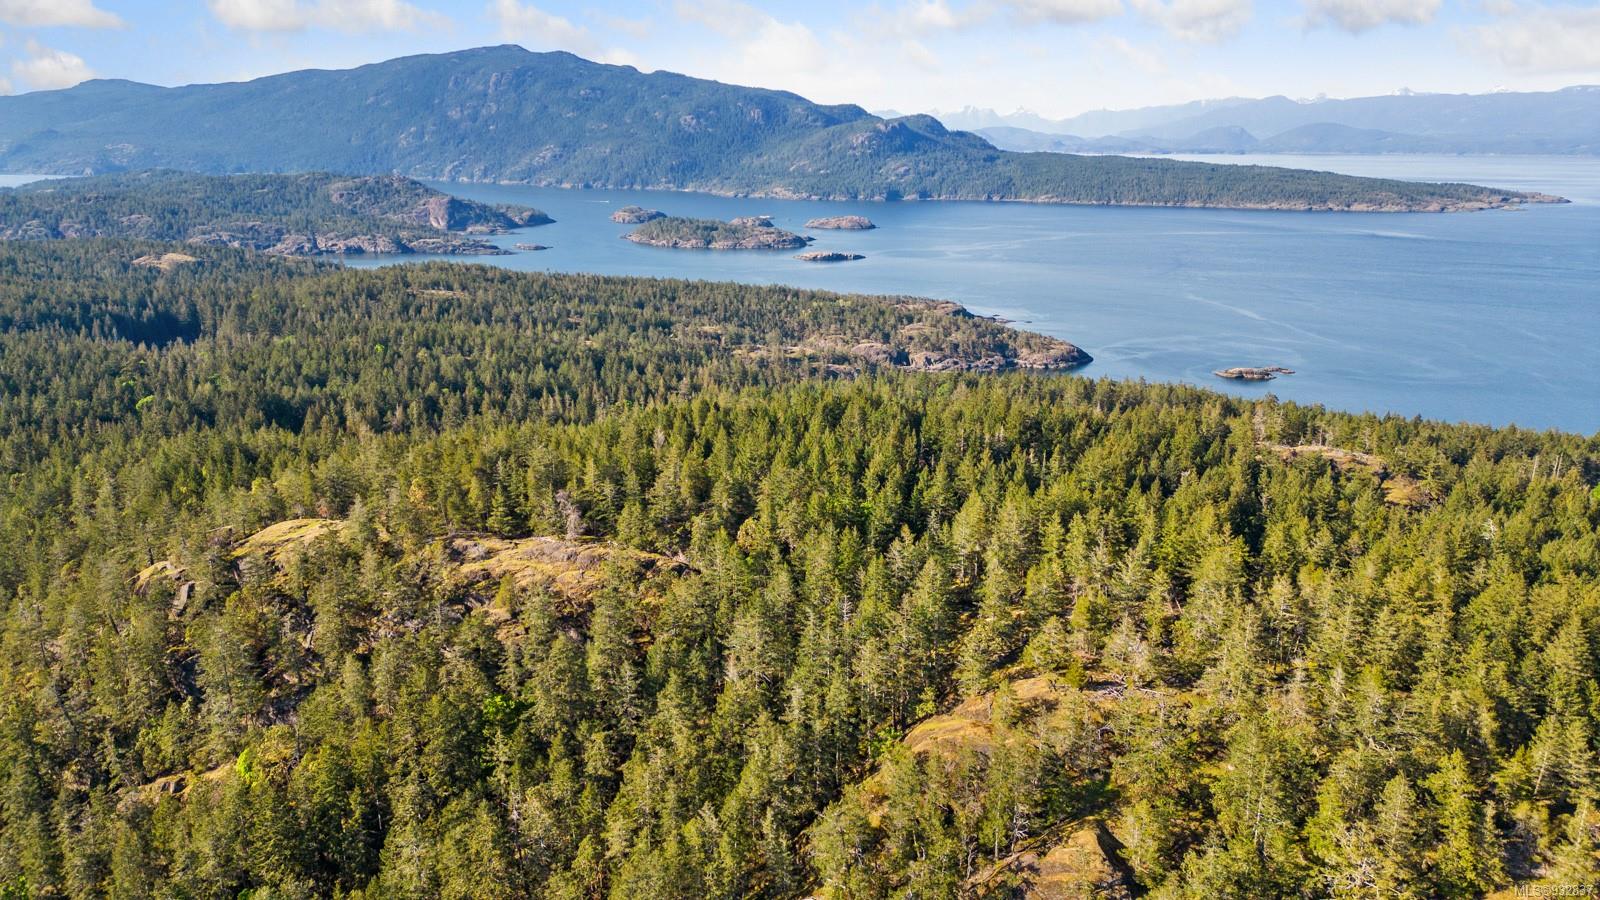 2341350 square feet Land in Lasqueti Island, British Columbia